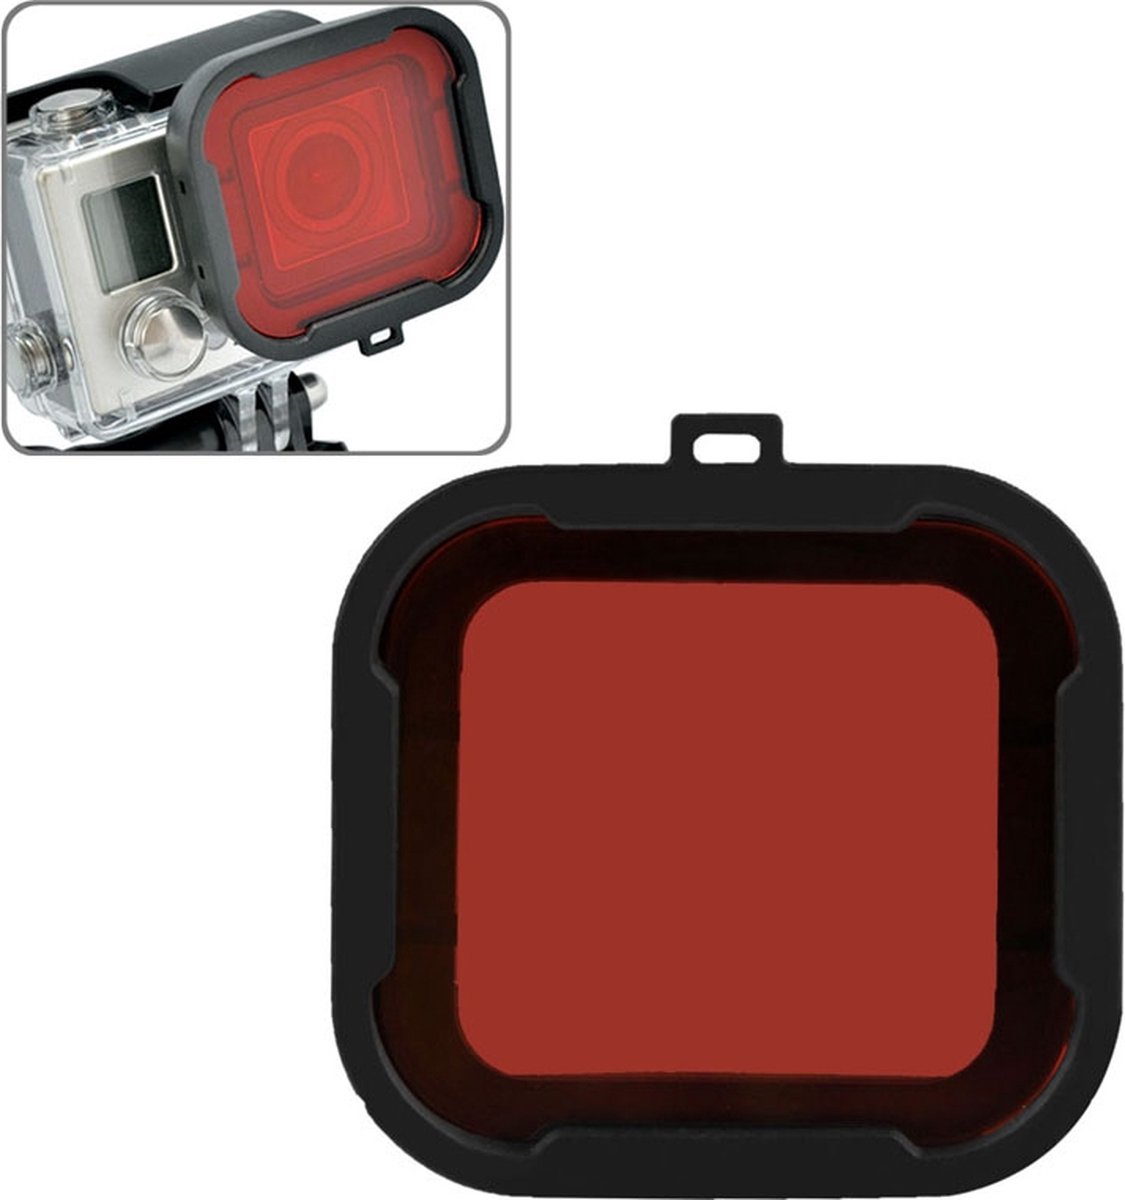 Rood duik filter voor GoPro Hero 4 / 3+ (rood) | bol.com